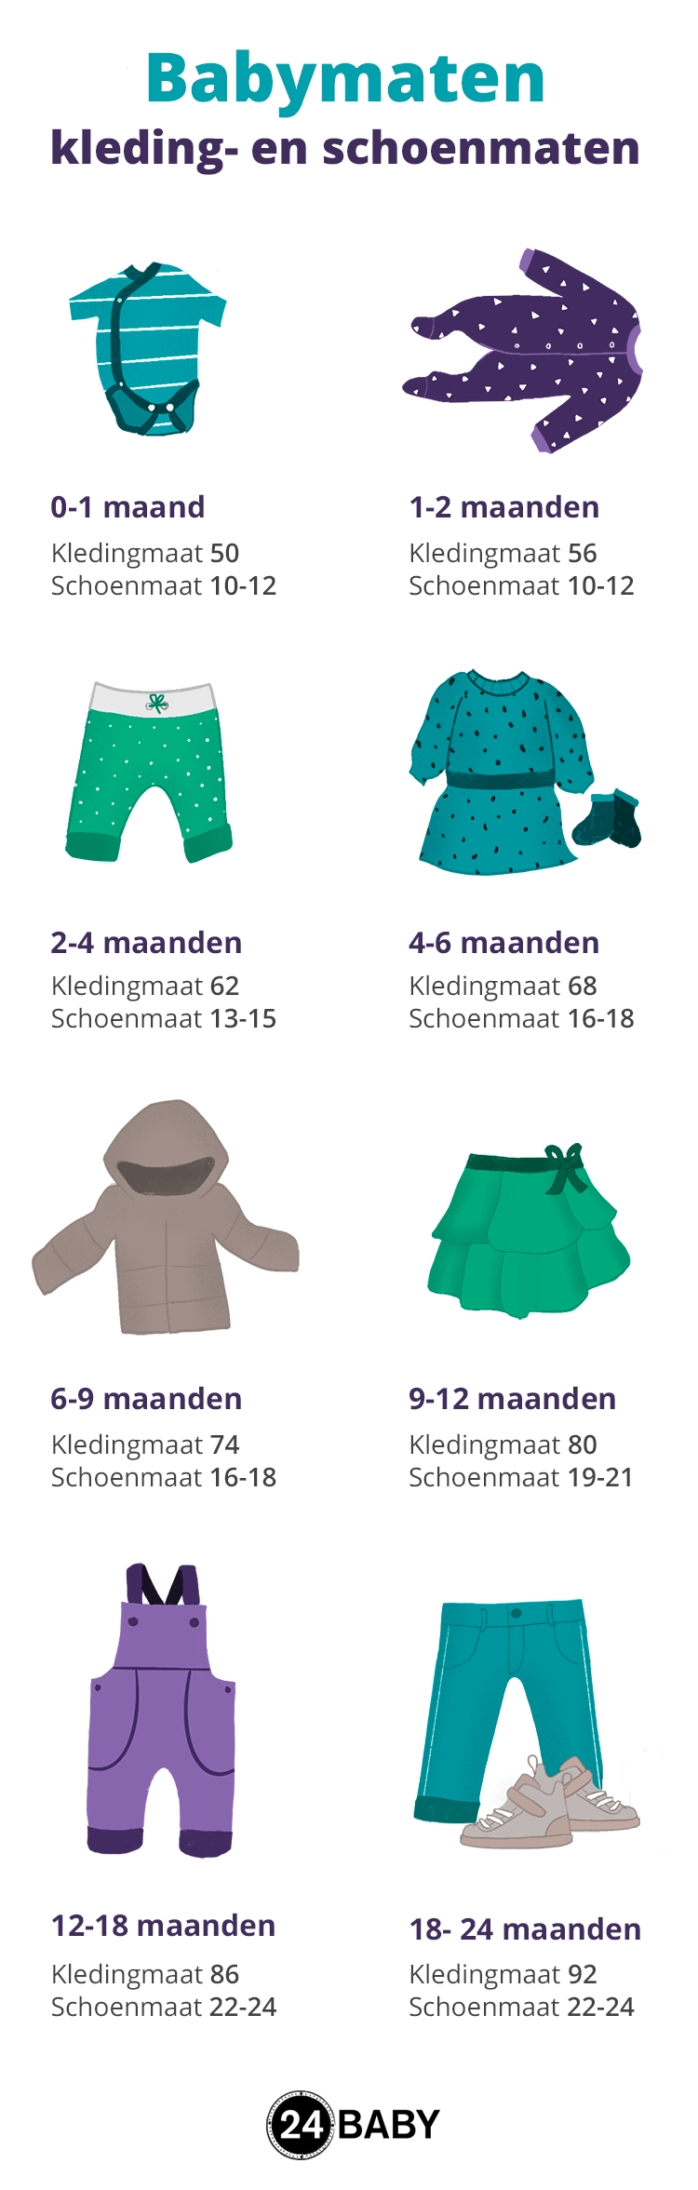 hersenen Ouderling Extreem Babymaten – van kledingmaat tot schoenmaat – 24Baby.nl